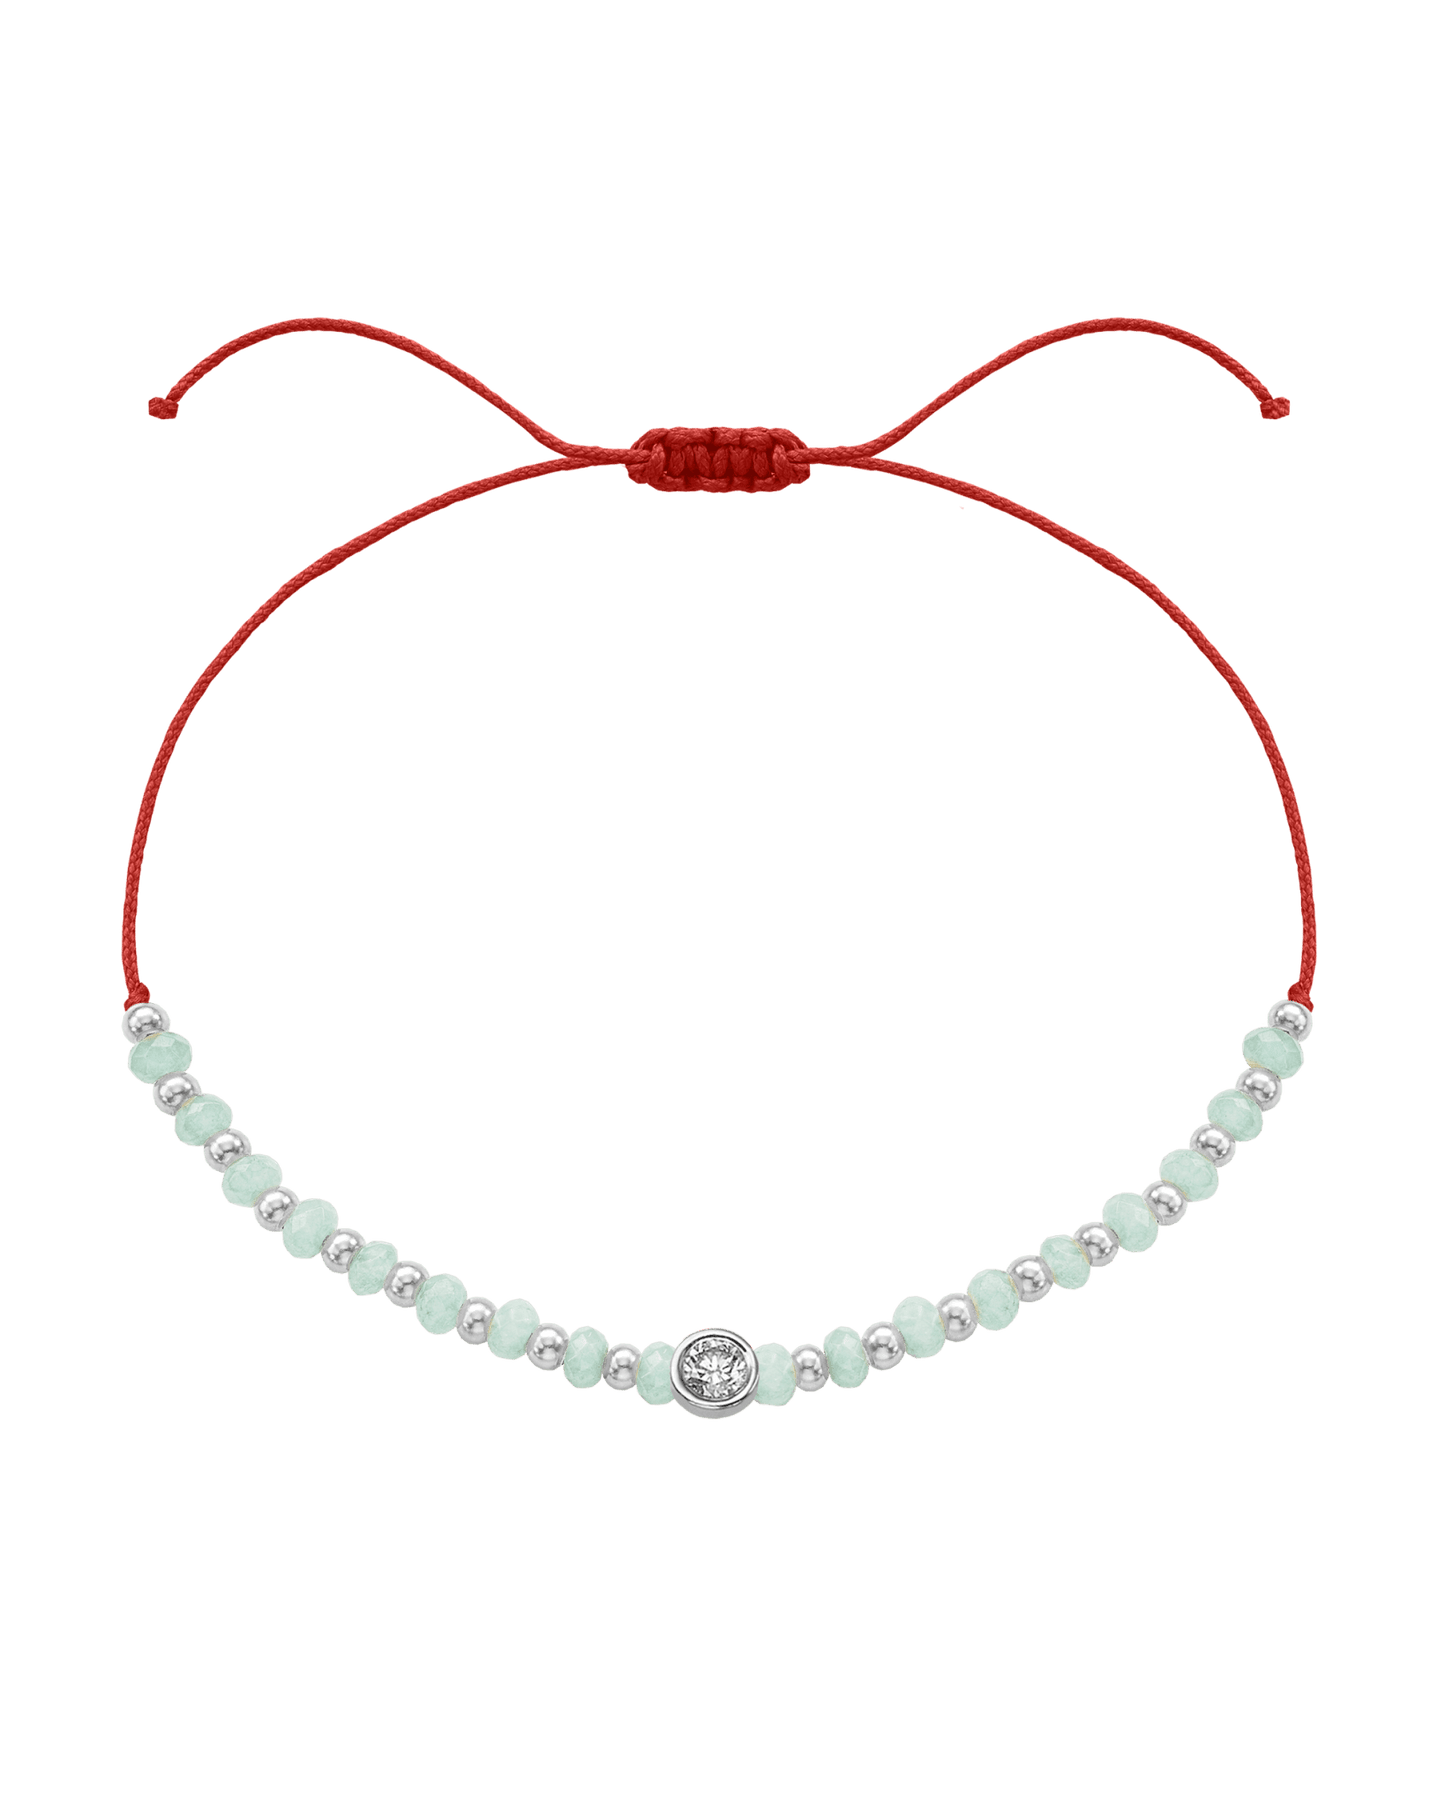 Apatite Gemstone String of Love Bracelet for Inspiration - 14K White Gold Bracelets 14K Solid Gold Red Large: 0.1ct 